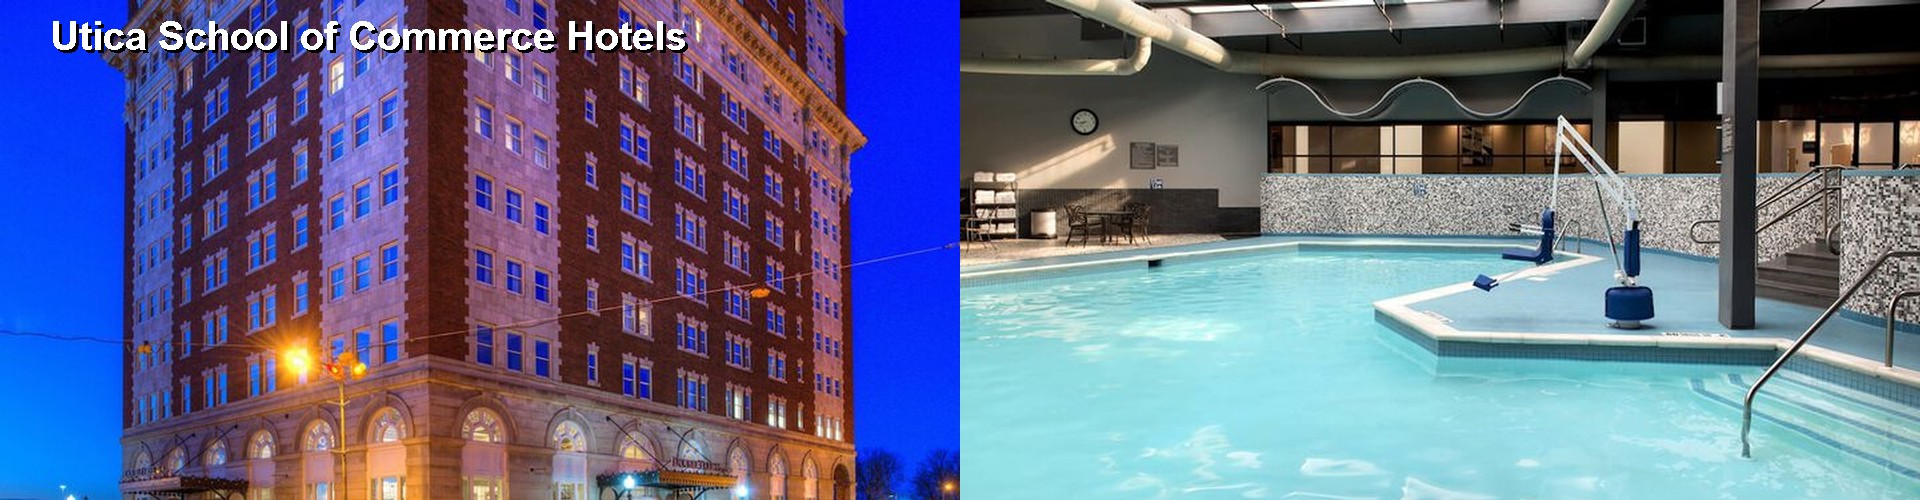 5 Best Hotels near Utica School of Commerce